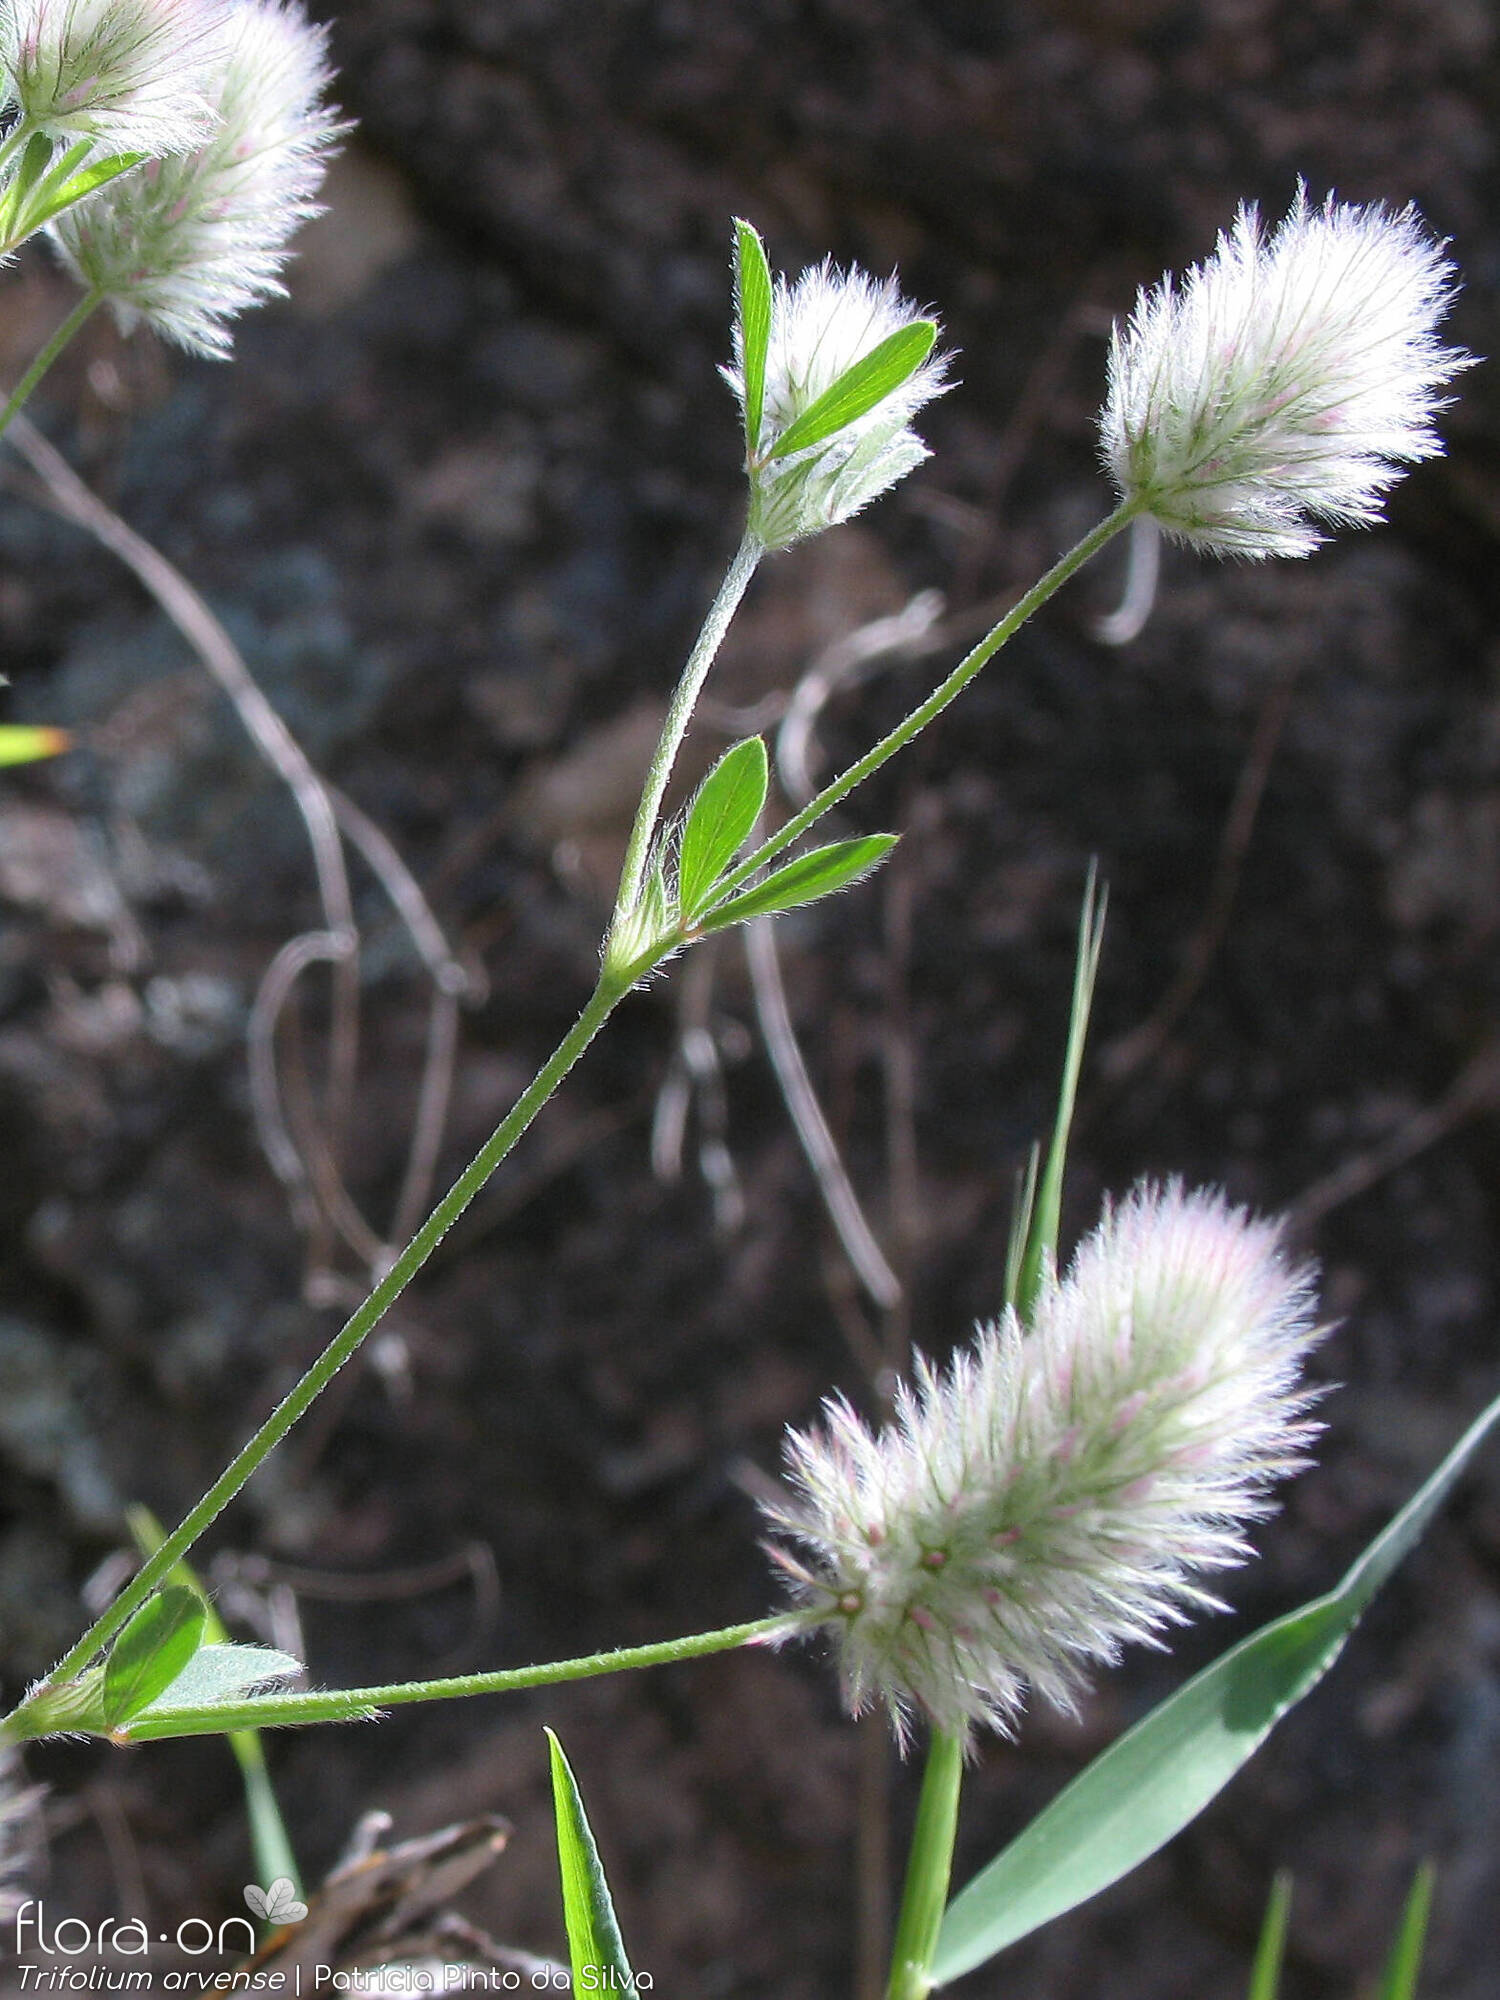 Trifolium arvense - Flor (geral) | Patrícia Pinto da Silva; CC BY-NC 4.0